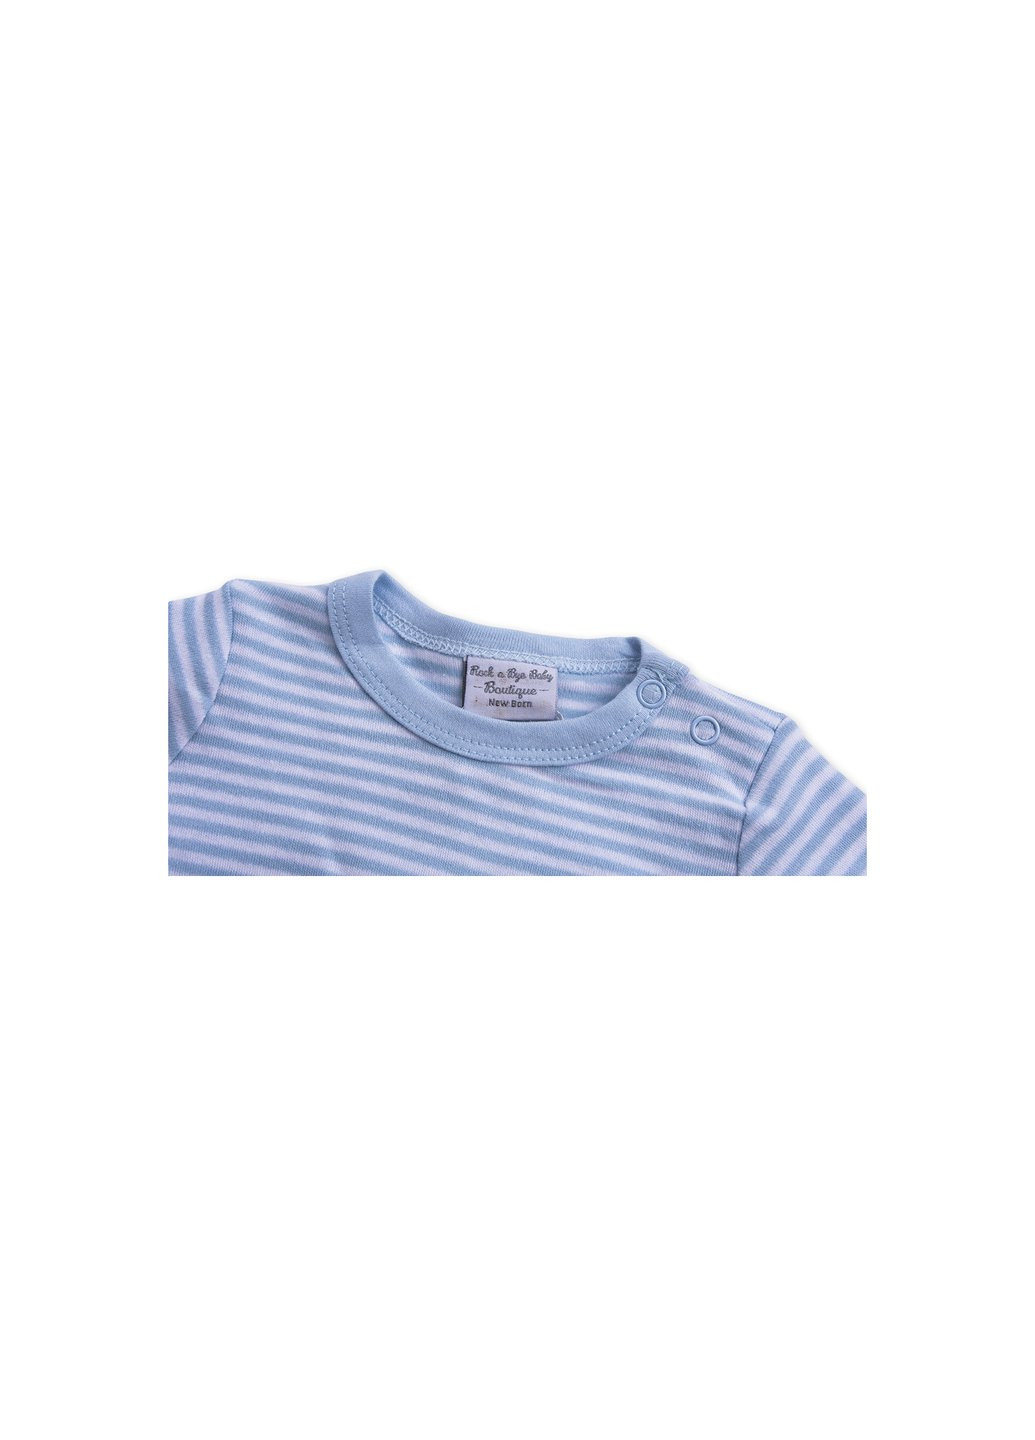 Комбинированный демисезонный набор детской одежды велюровый голубой c капюшоном (ep6206.3-6) Luvena Fortuna